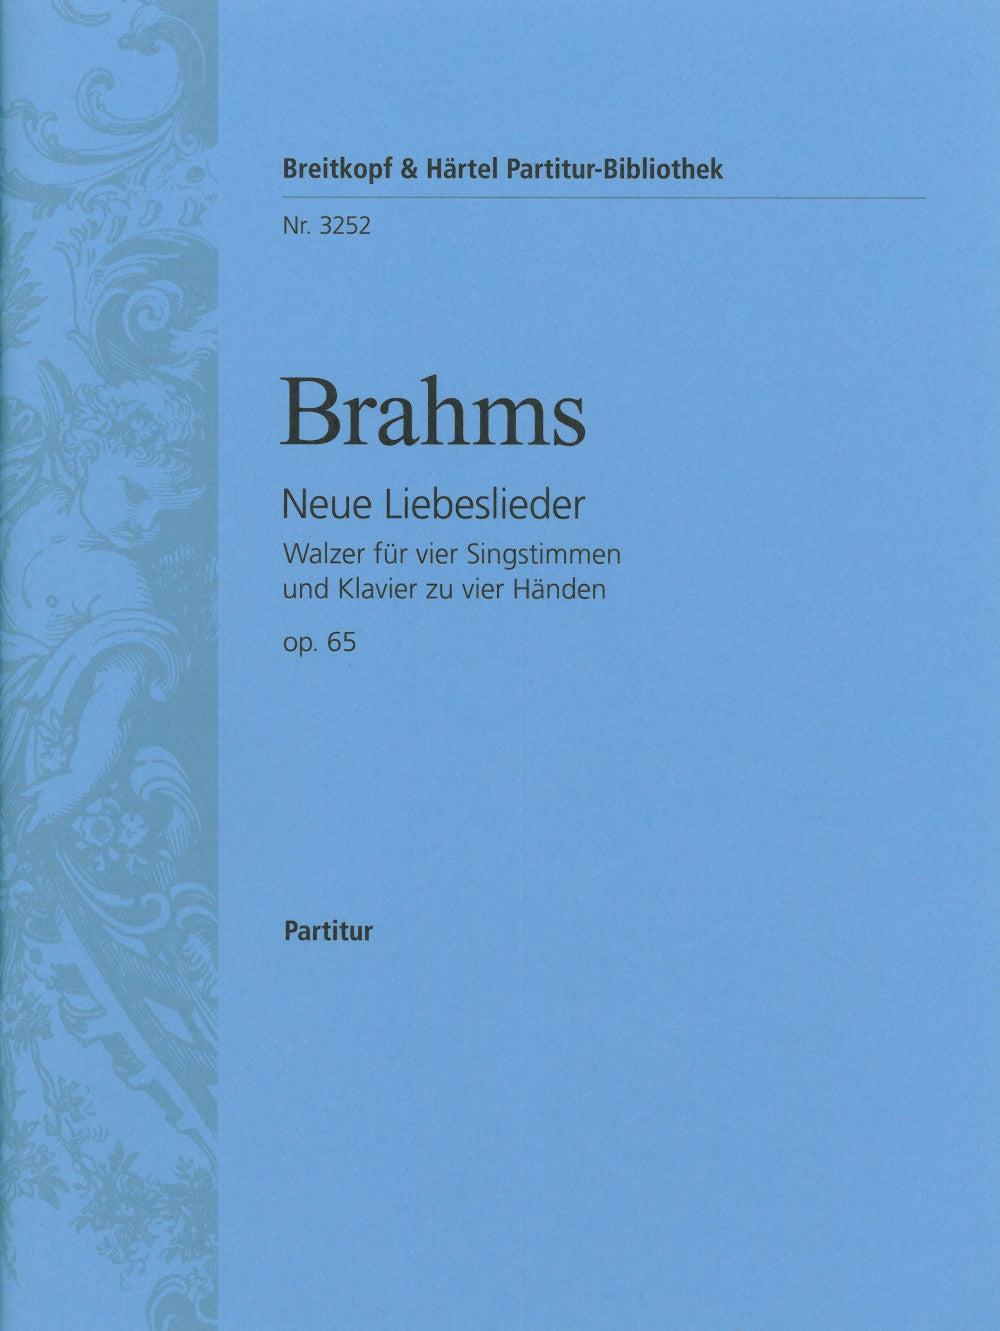 Brahms: Neue Liebeslieder, Op. 65